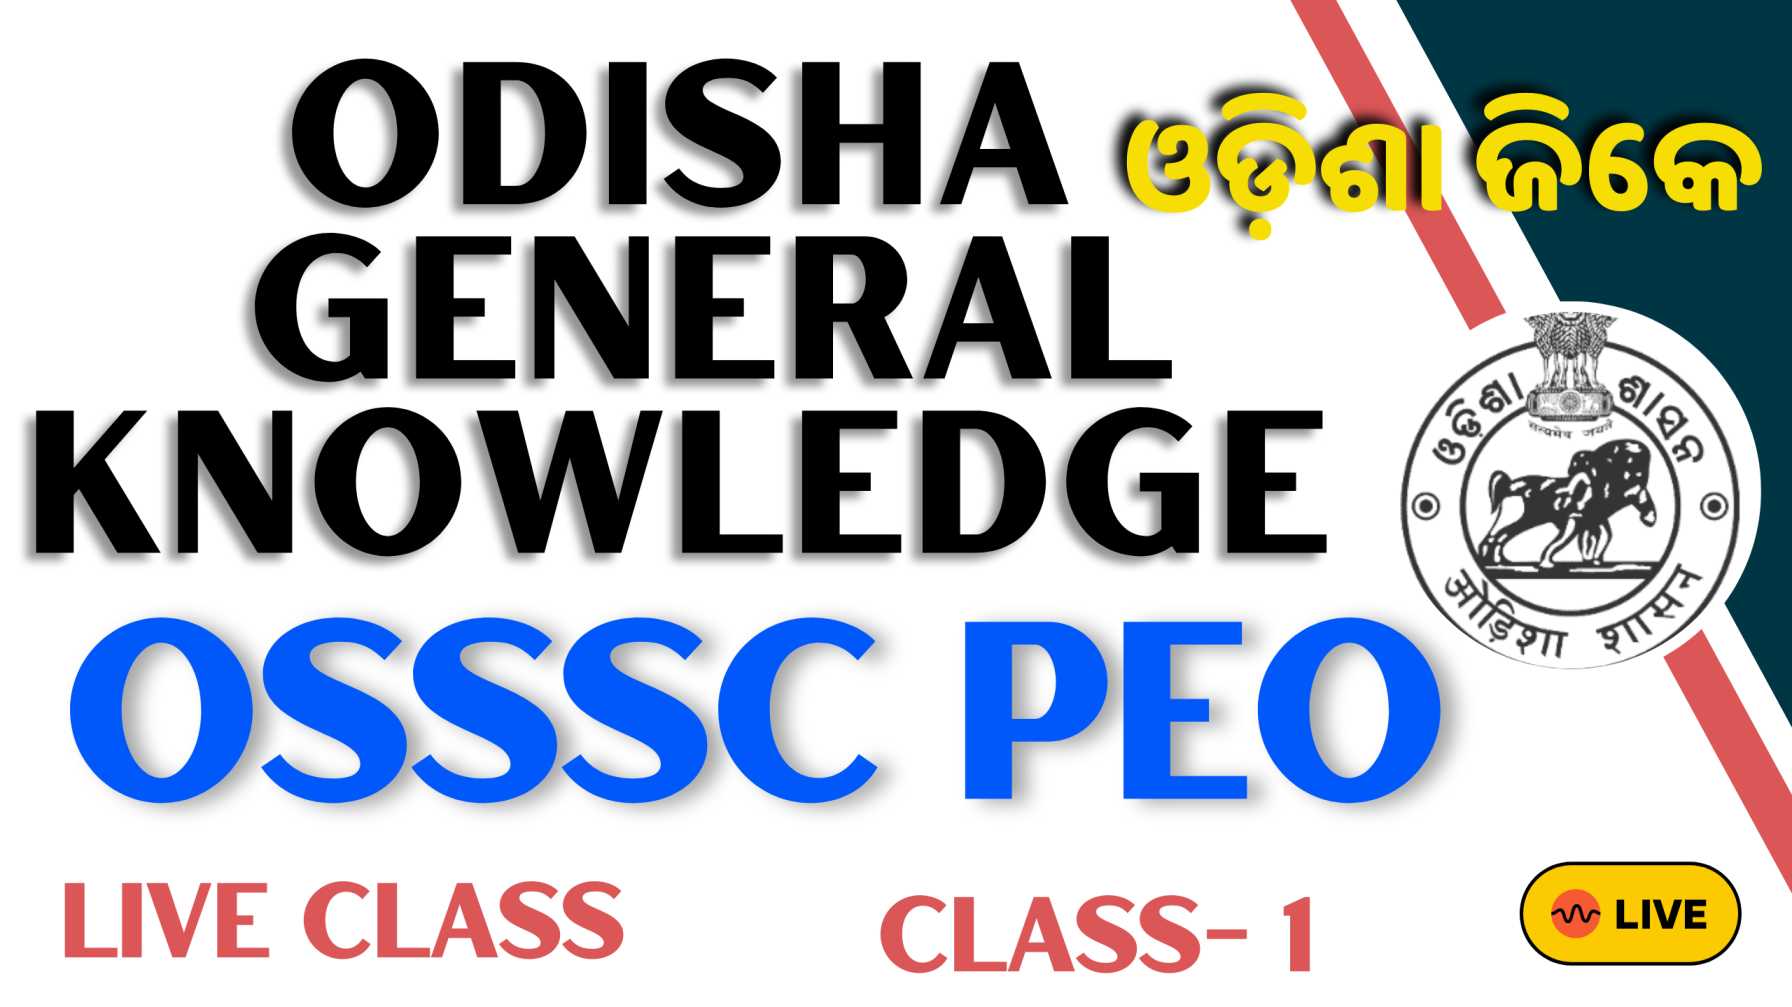 Odisha General Knowledge class-1 PDF